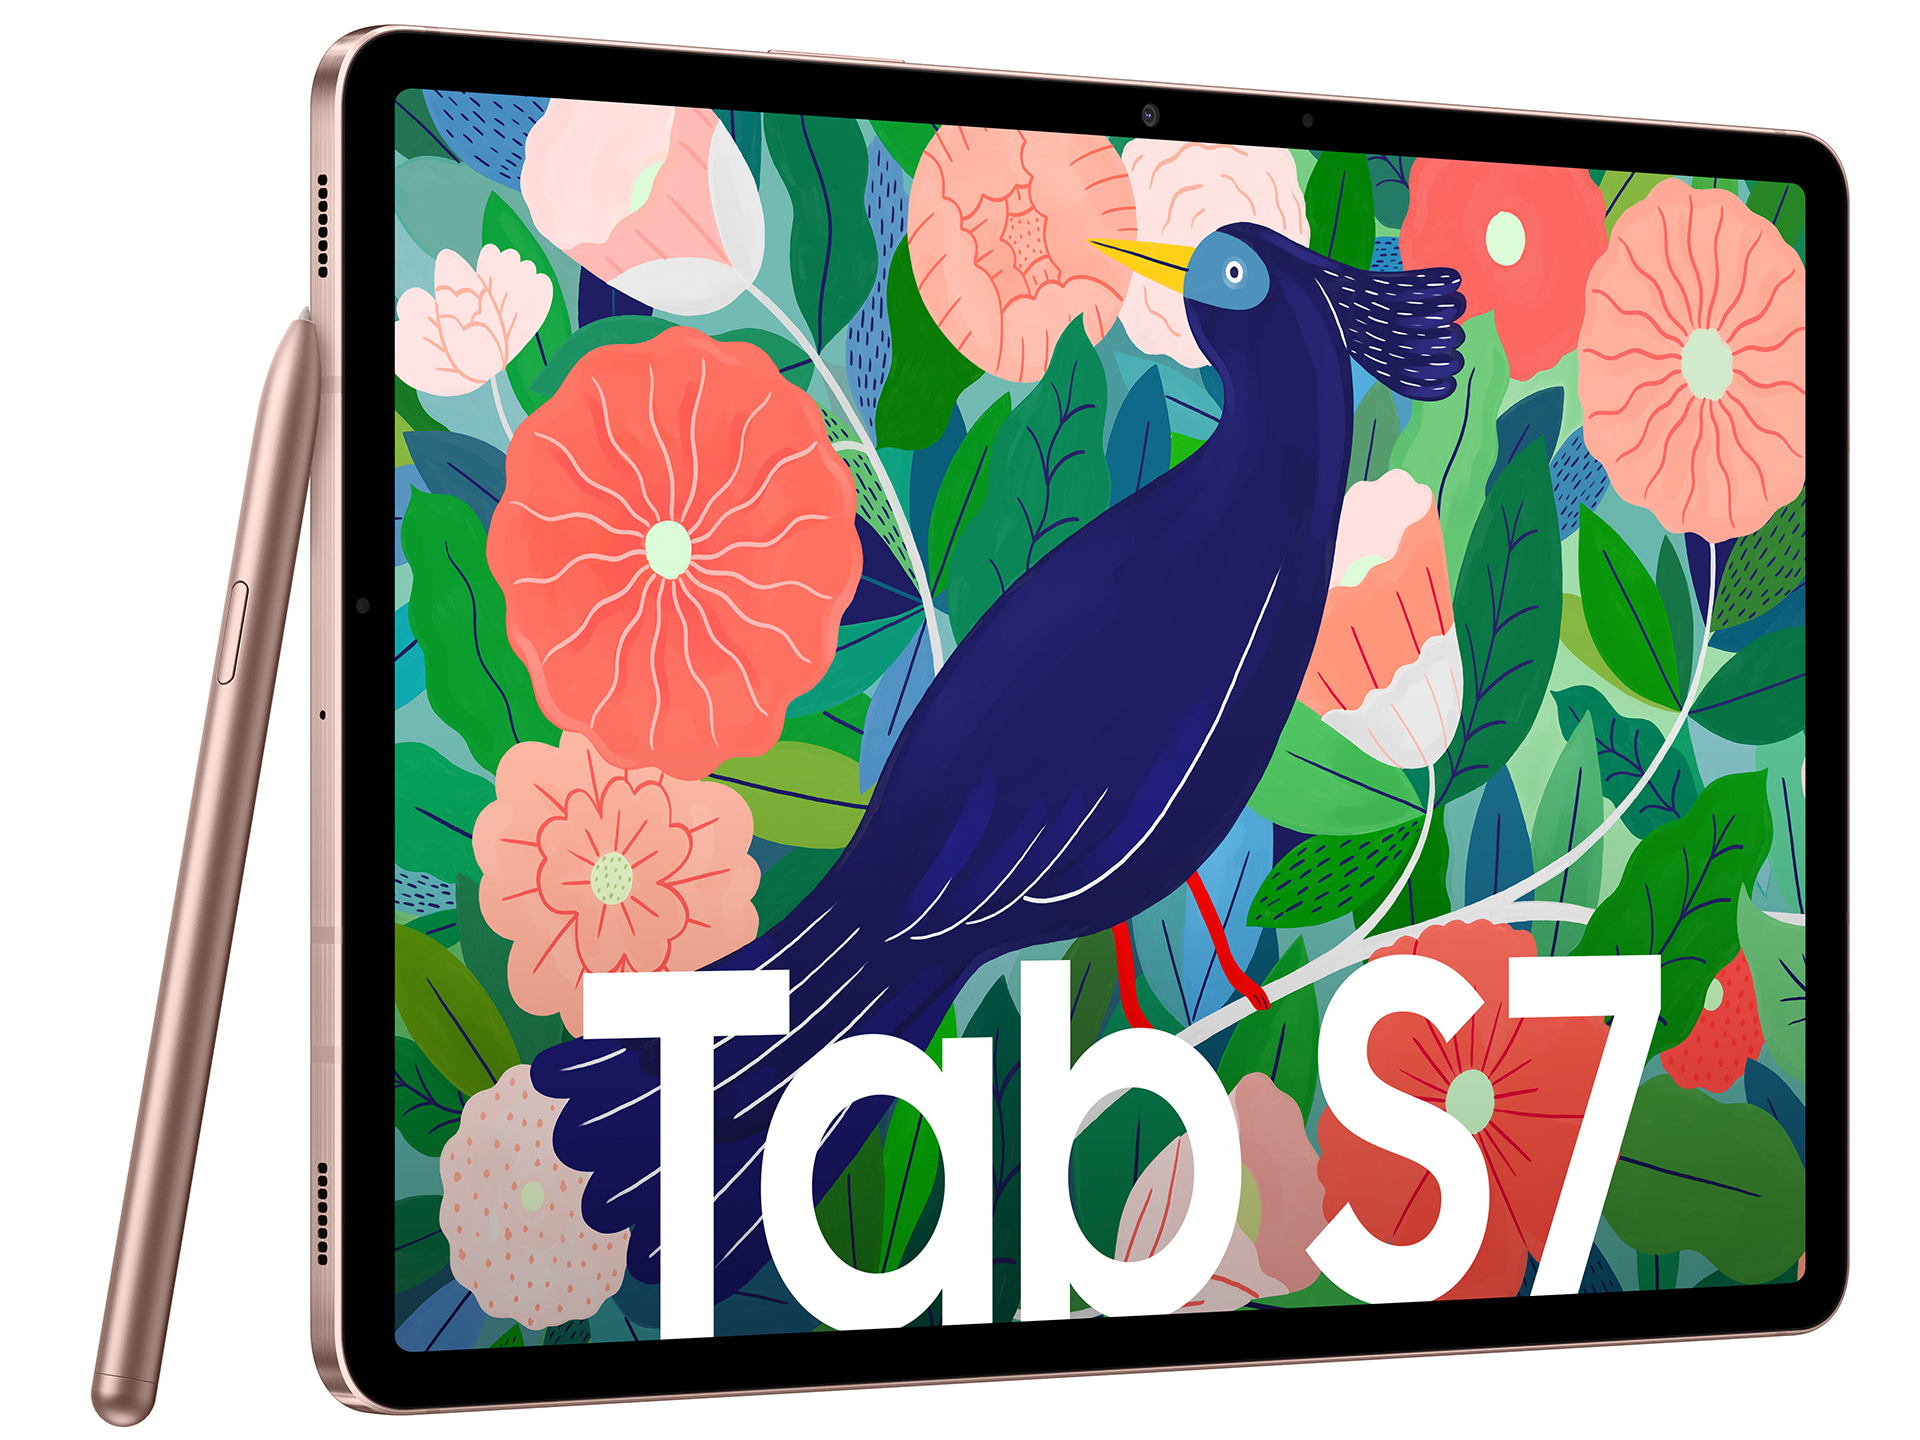 Với Samsung Galaxy Tab S7, bạn sẽ được trải nghiệm phong cách lịch lãm và chất lượng hình ảnh tuyệt vời! Hãy cùng khám phá những tính năng độc đáo của chiếc máy tính bảng này thông qua hình ảnh được chụp lại.